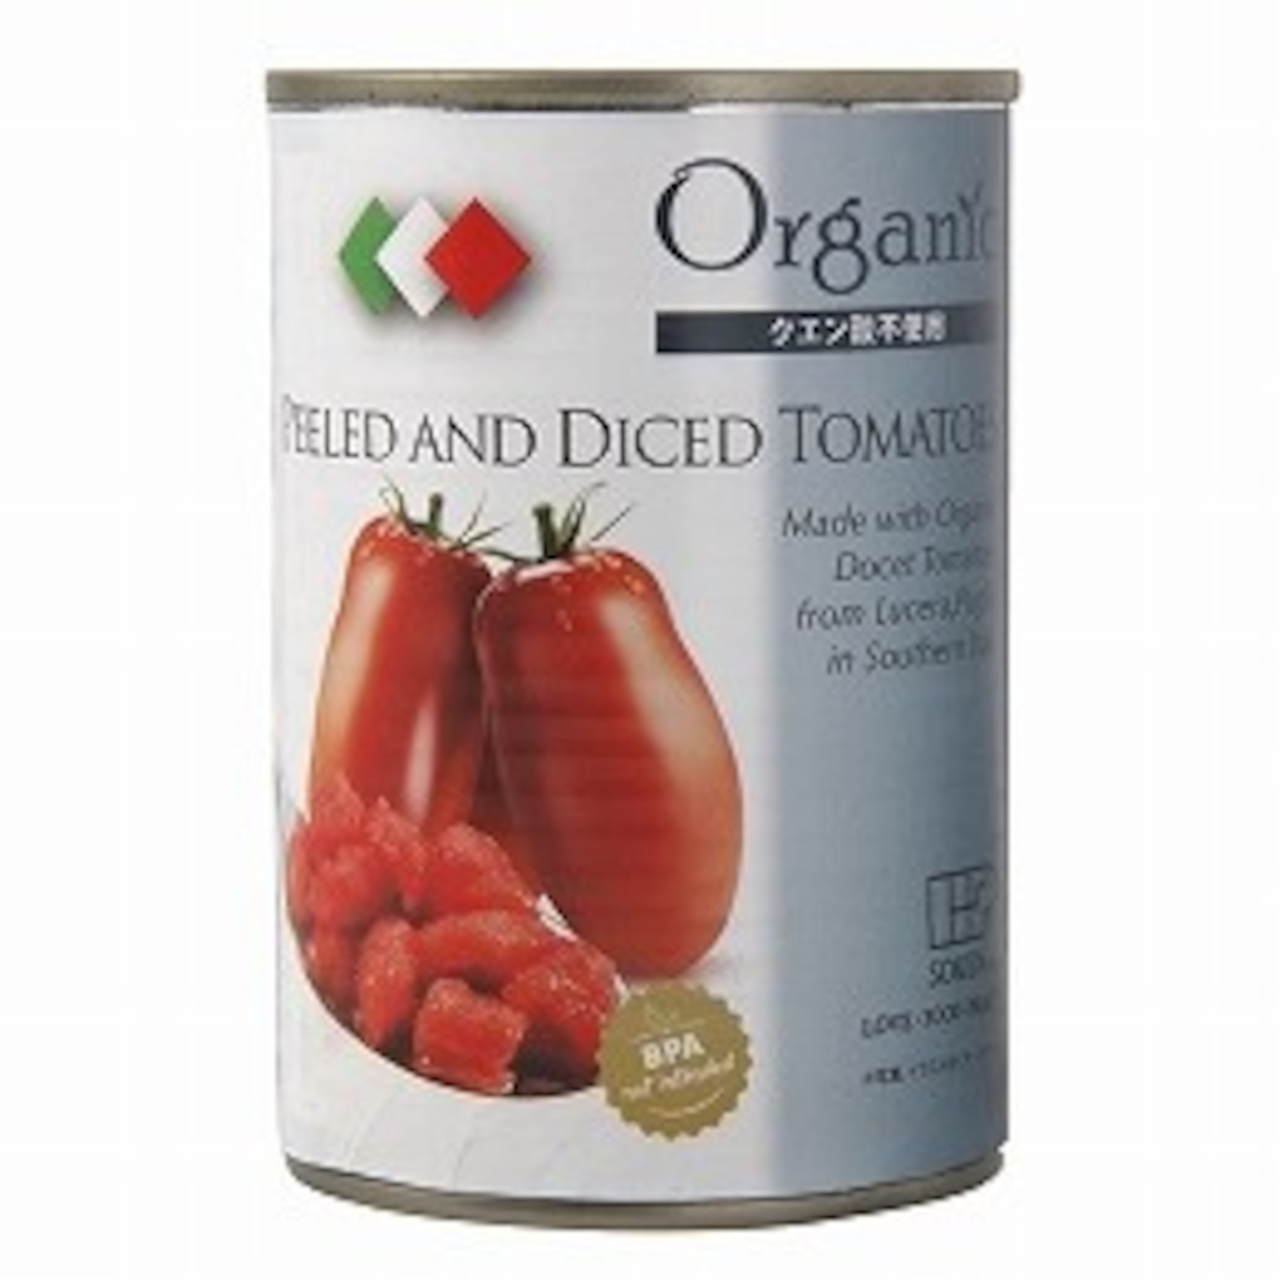 【有機】オーガニック ダイストマト缶 400g